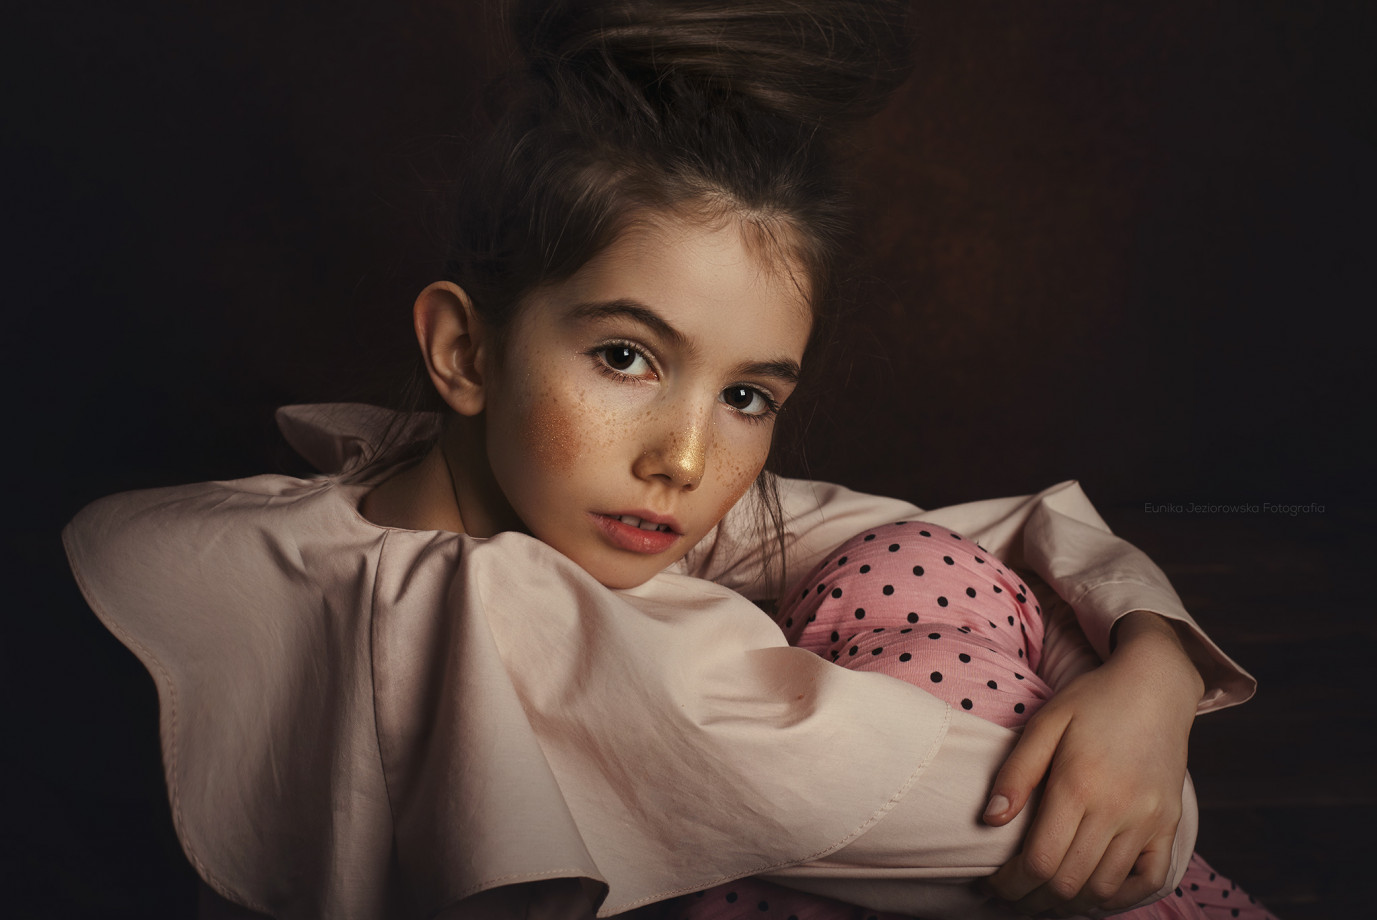 fotograf bytom bobolotek-studio portfolio portret zdjecia portrety